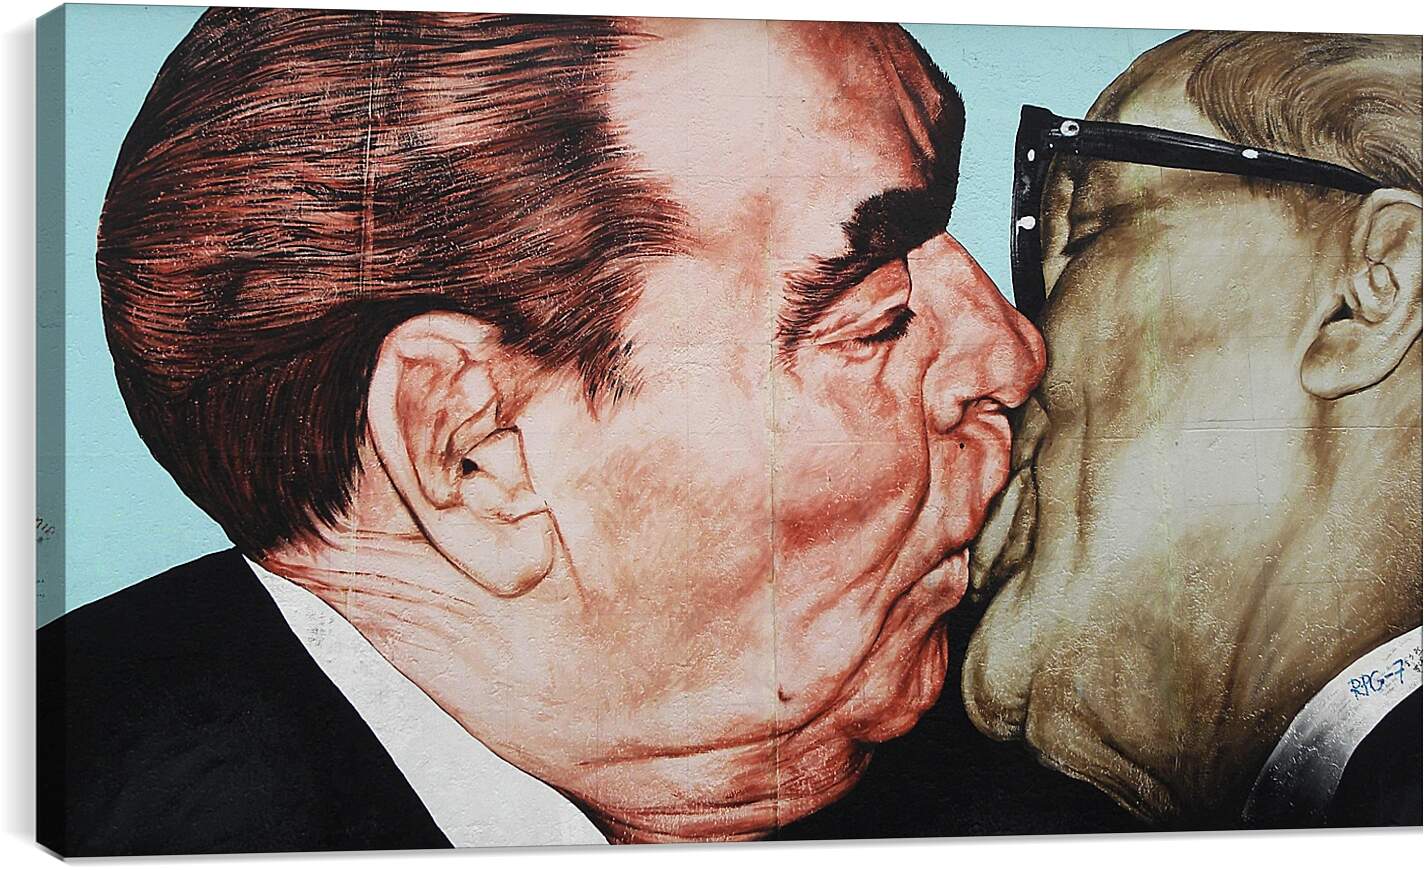 Постер и плакат - Поцелуй Брежнева и Хонеккера